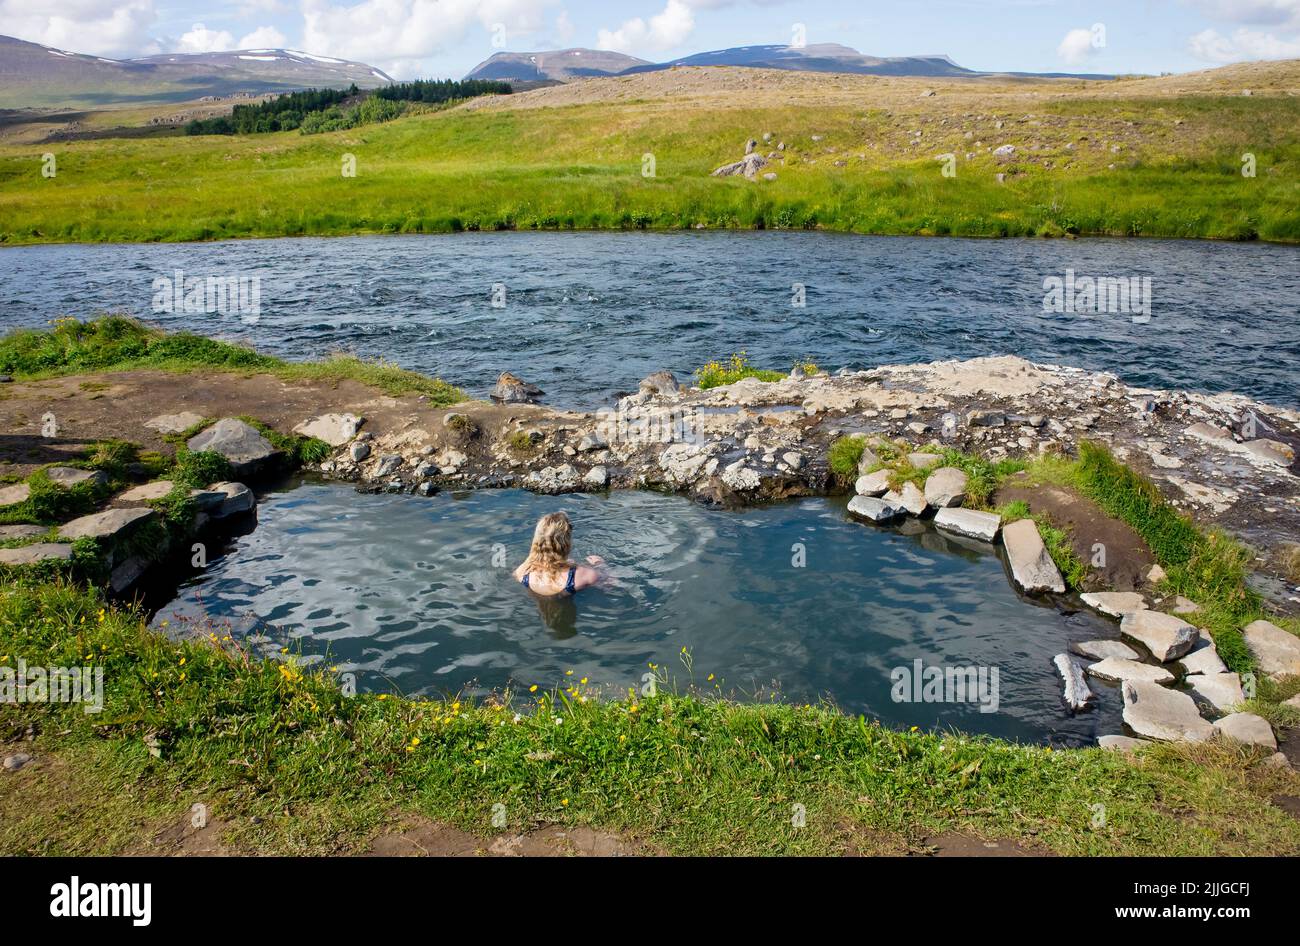 Mujer relajarse y bañarse en la piscina natural geotérmica caliente, aguas termales en Islandia en verano. Verdes colinas ondulantes y cielo azul en el fondo. Foto de stock